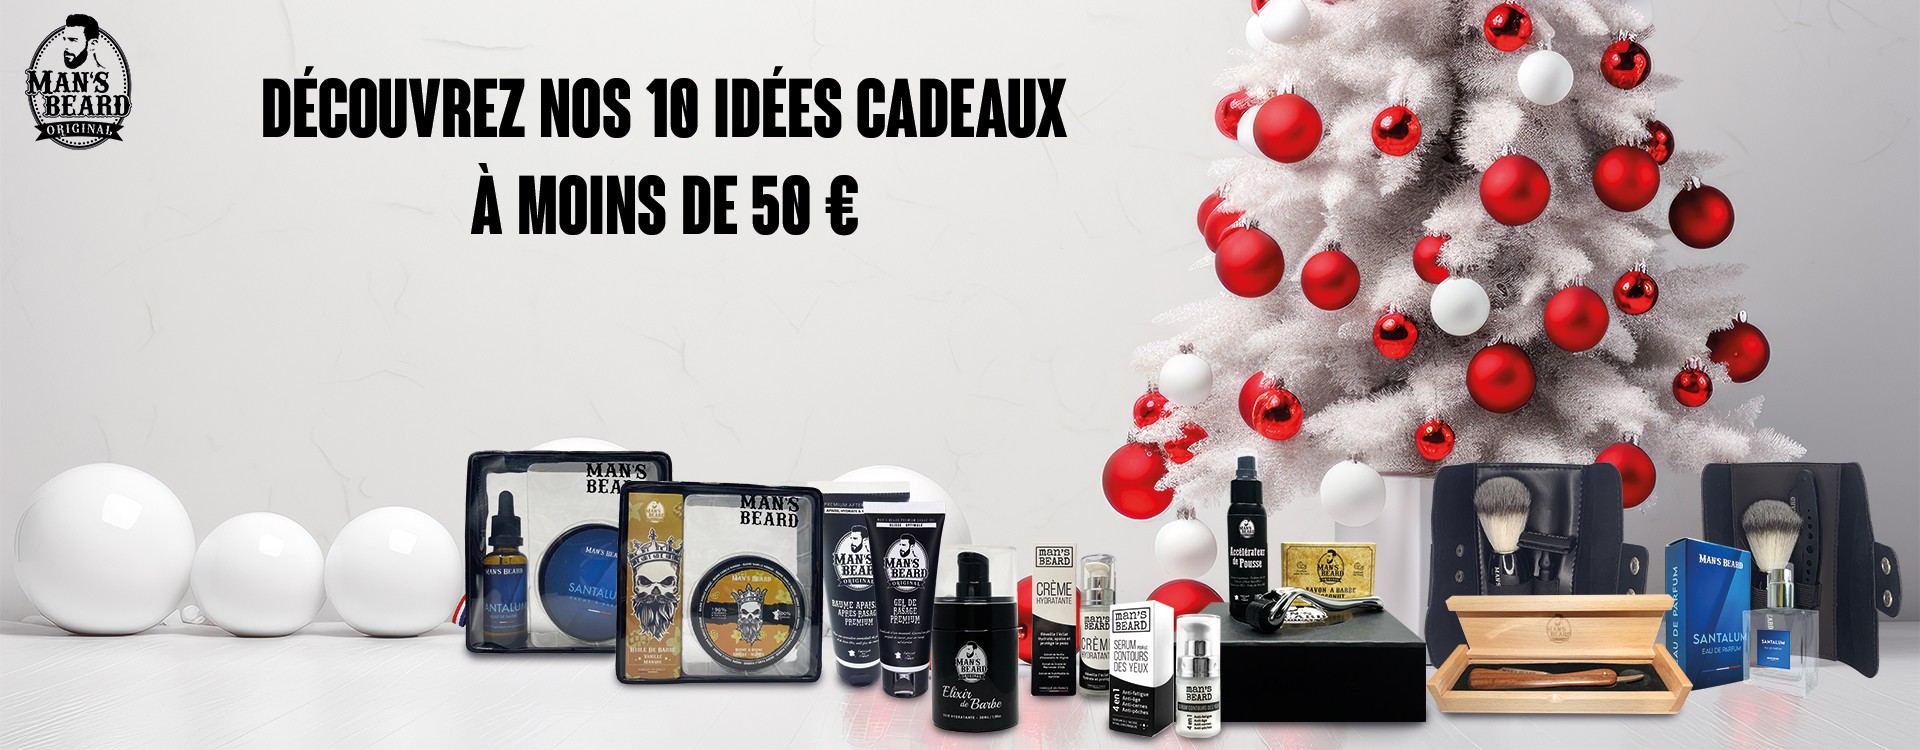 28 Idées de Cadeaux Originales Pour Noel A Moins de 5 Euros